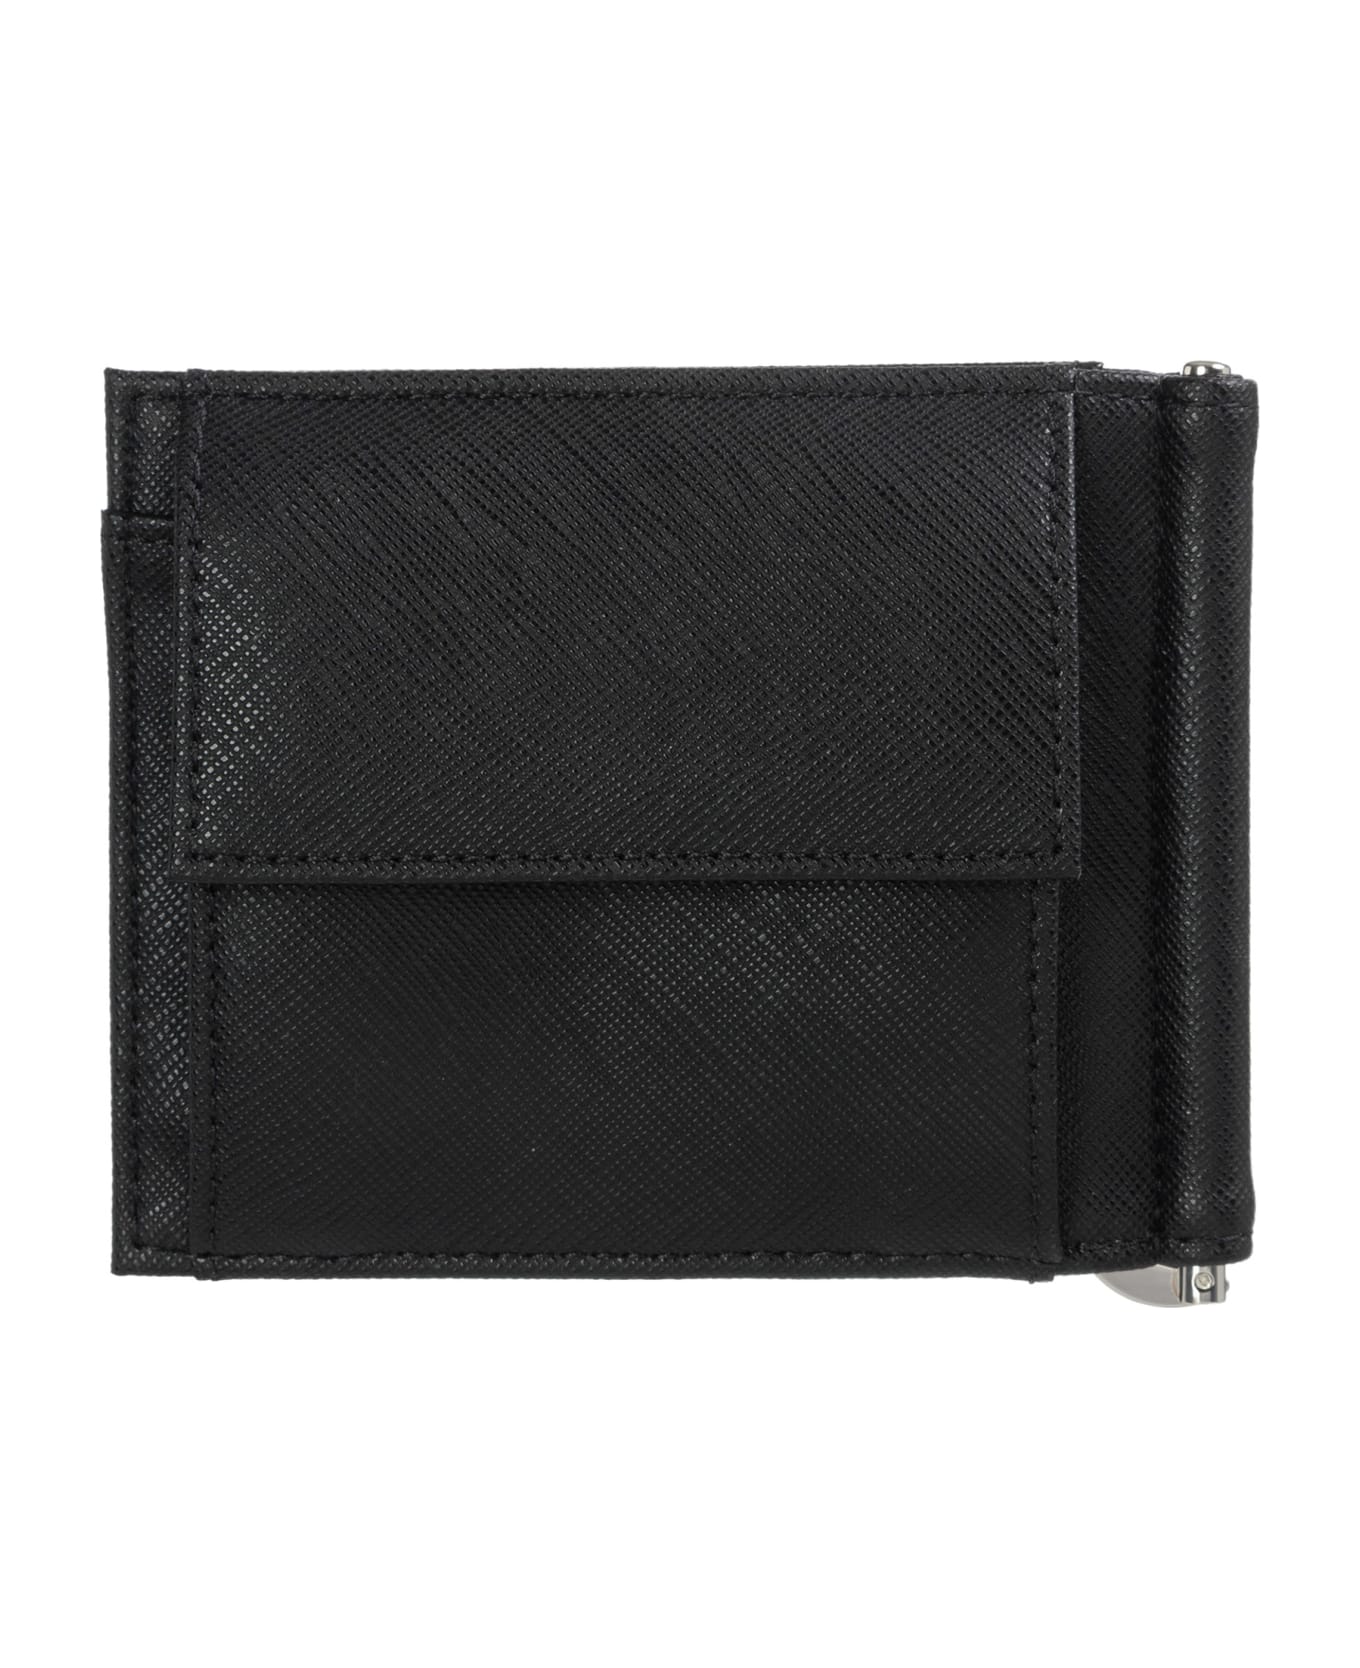 Emporio Armani Wallet - Black